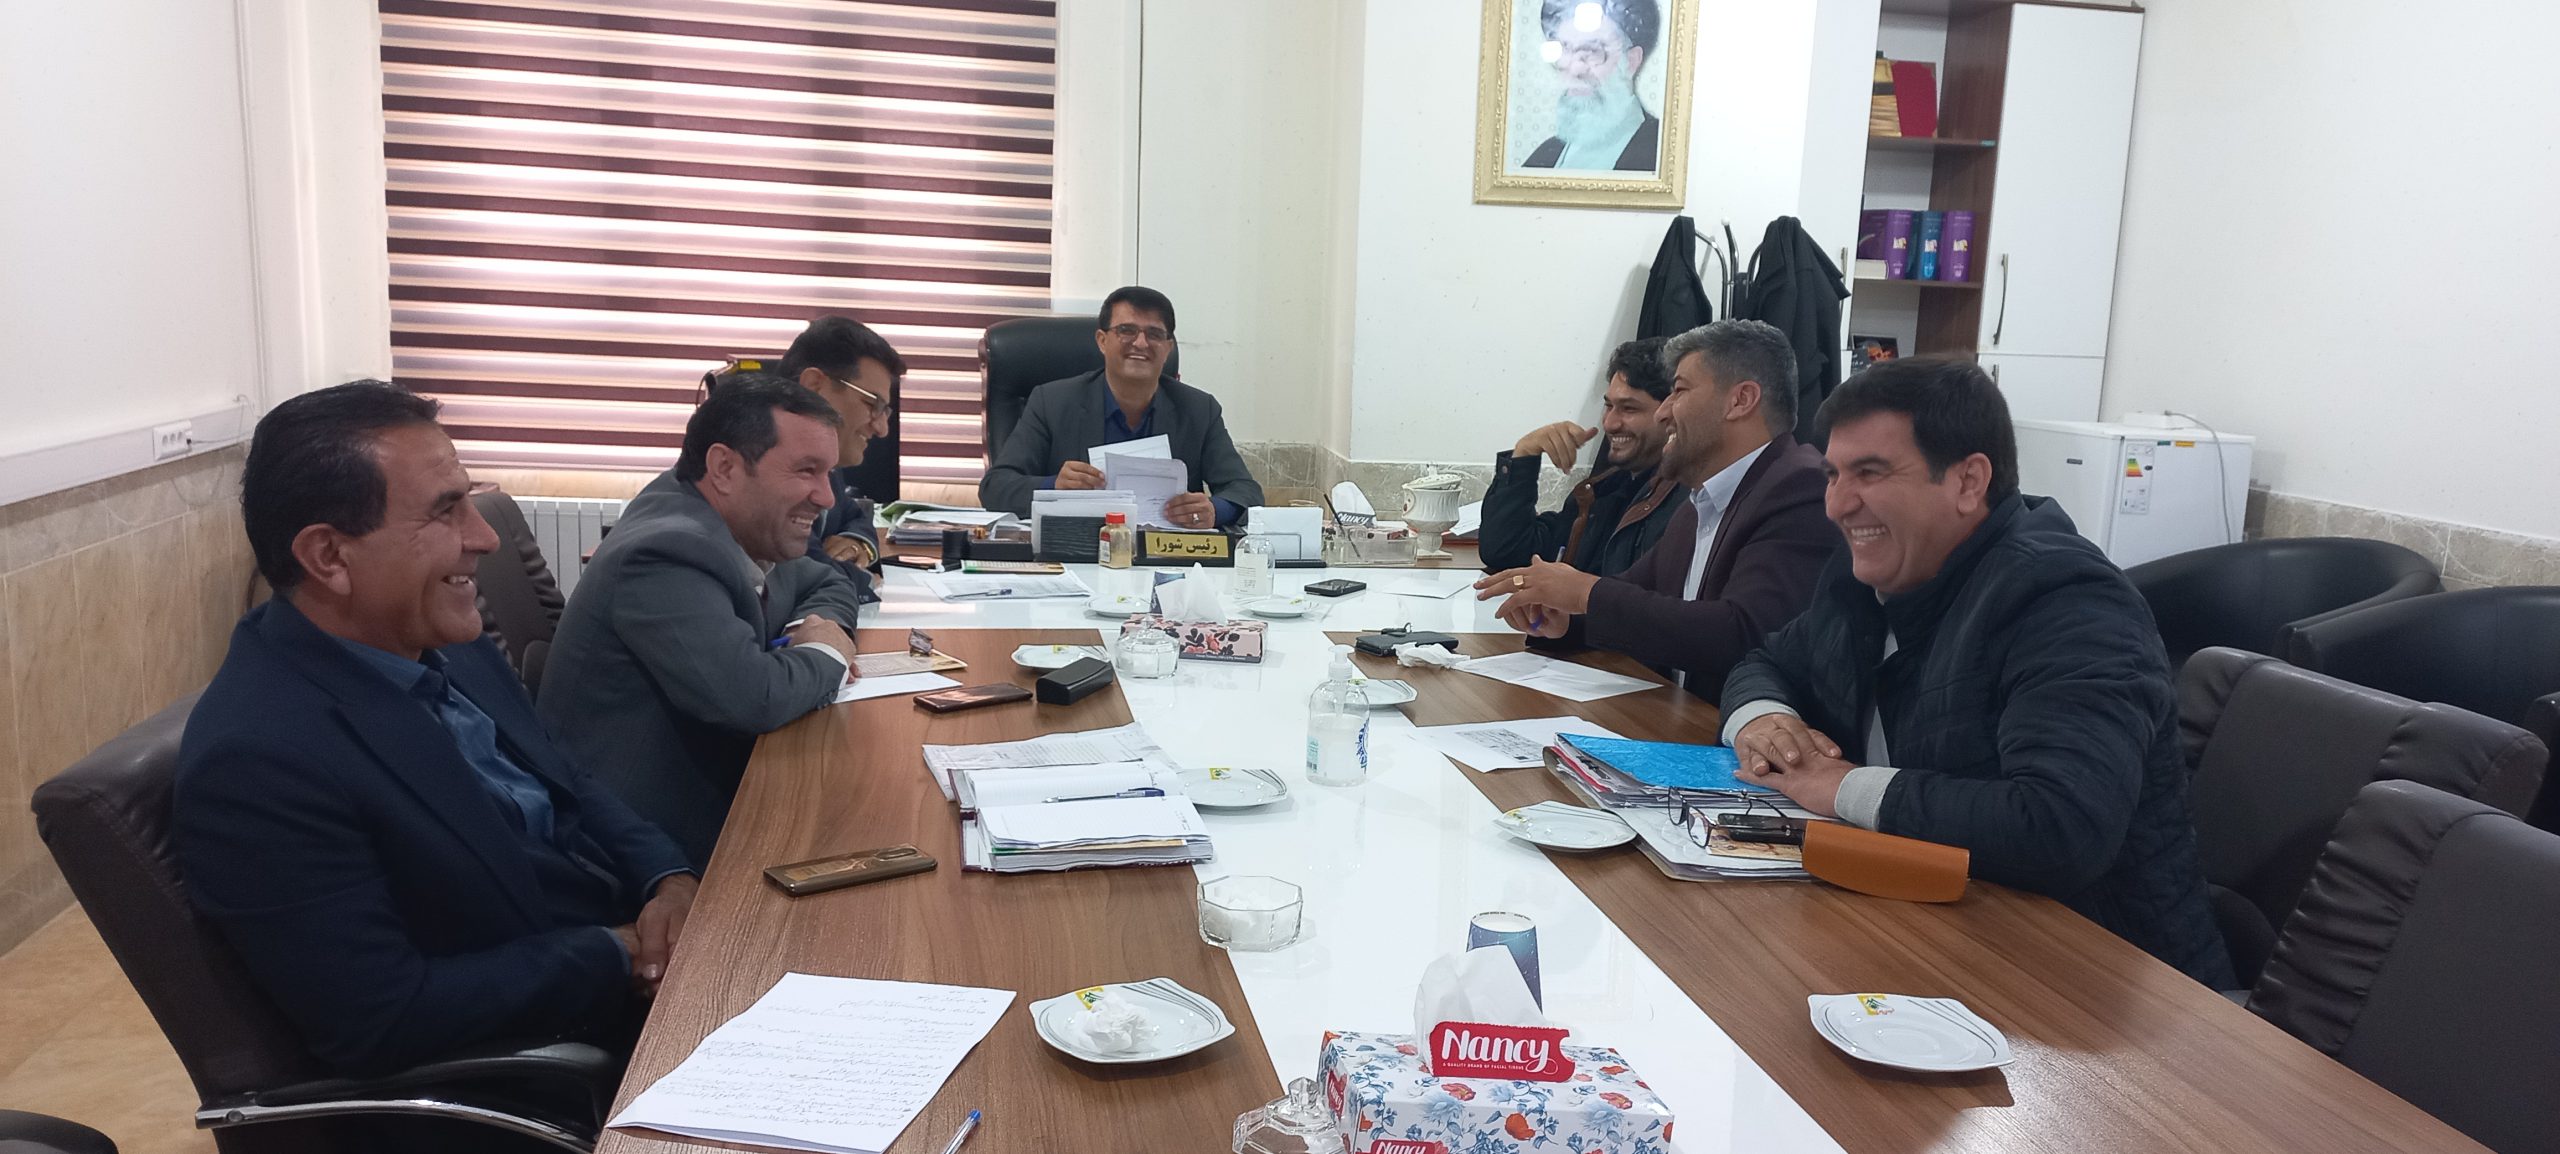 استیضاح شهردار یاسوج - فرسید احمدی کیش